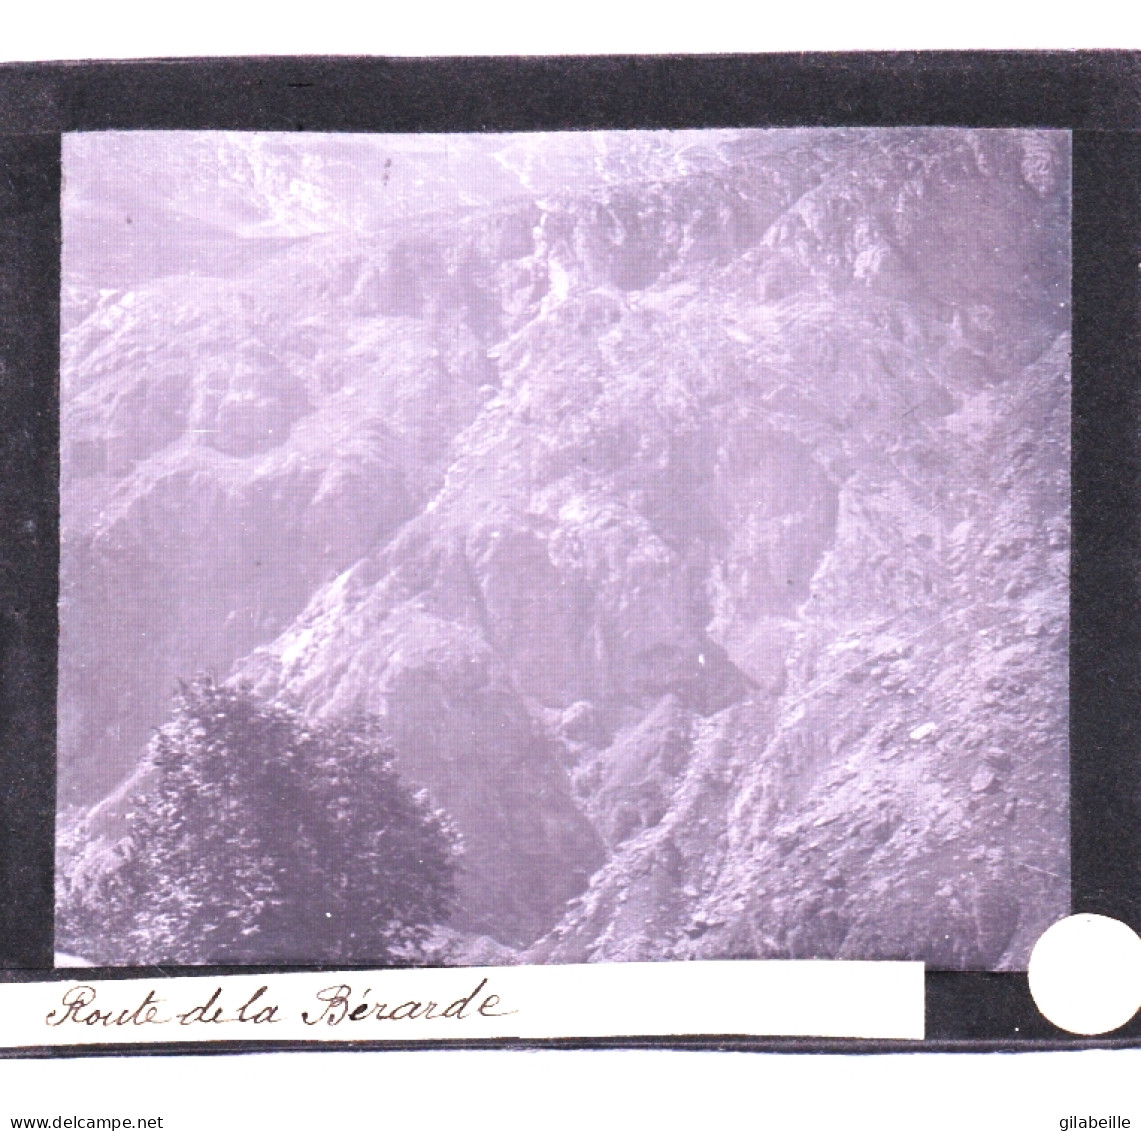 PLAQUE DE VERRE -  Photo  - Les Alpes -route De La BERARDE ( Saint-Christophe-en-Oisans )  - Année  1890 - Glass Slides